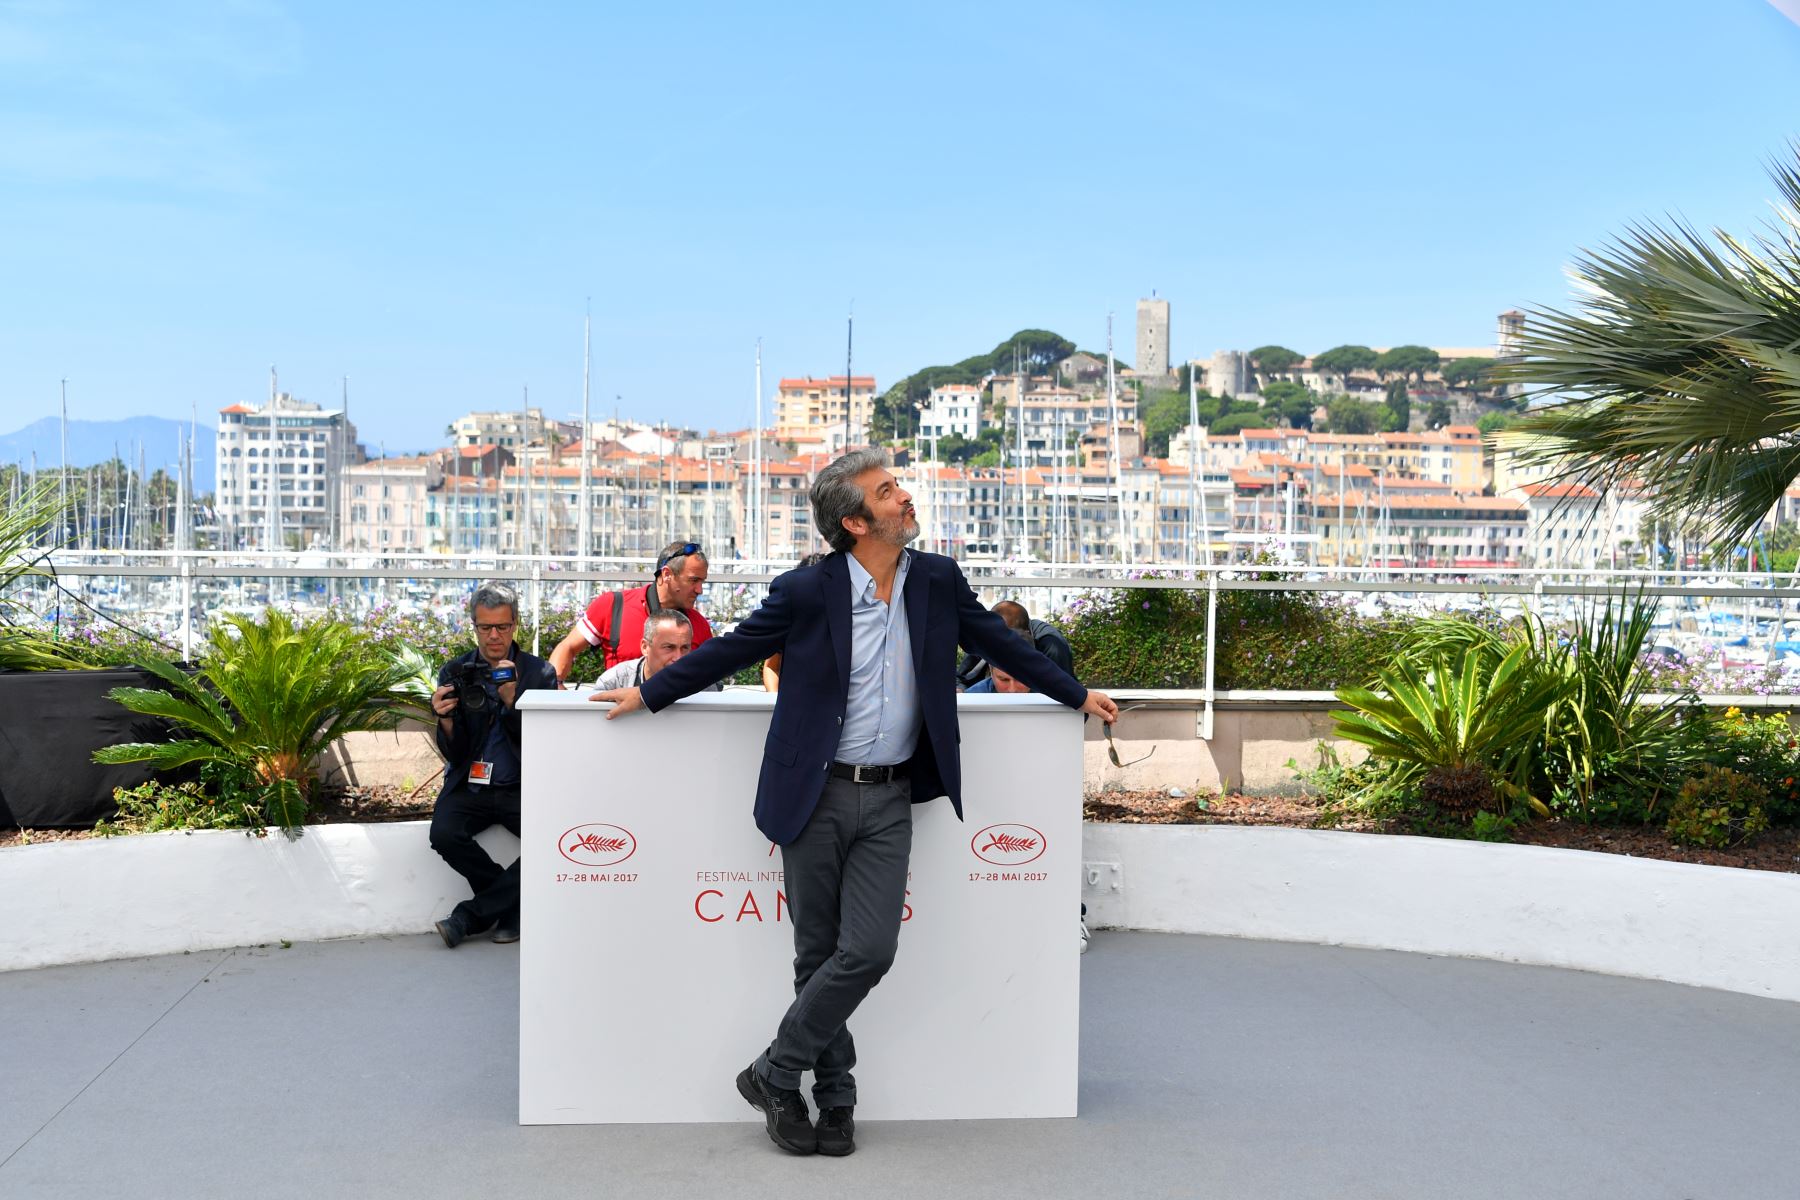 El actor argentino Ricardo Darin posa el 24 de mayo de 2017 durante una sesión fotográfica para la película "La Cordillera - El Presidente" en la 70 edición del Festival de Cannes en Cannes, en el sur de Francia.
Foto: AFP